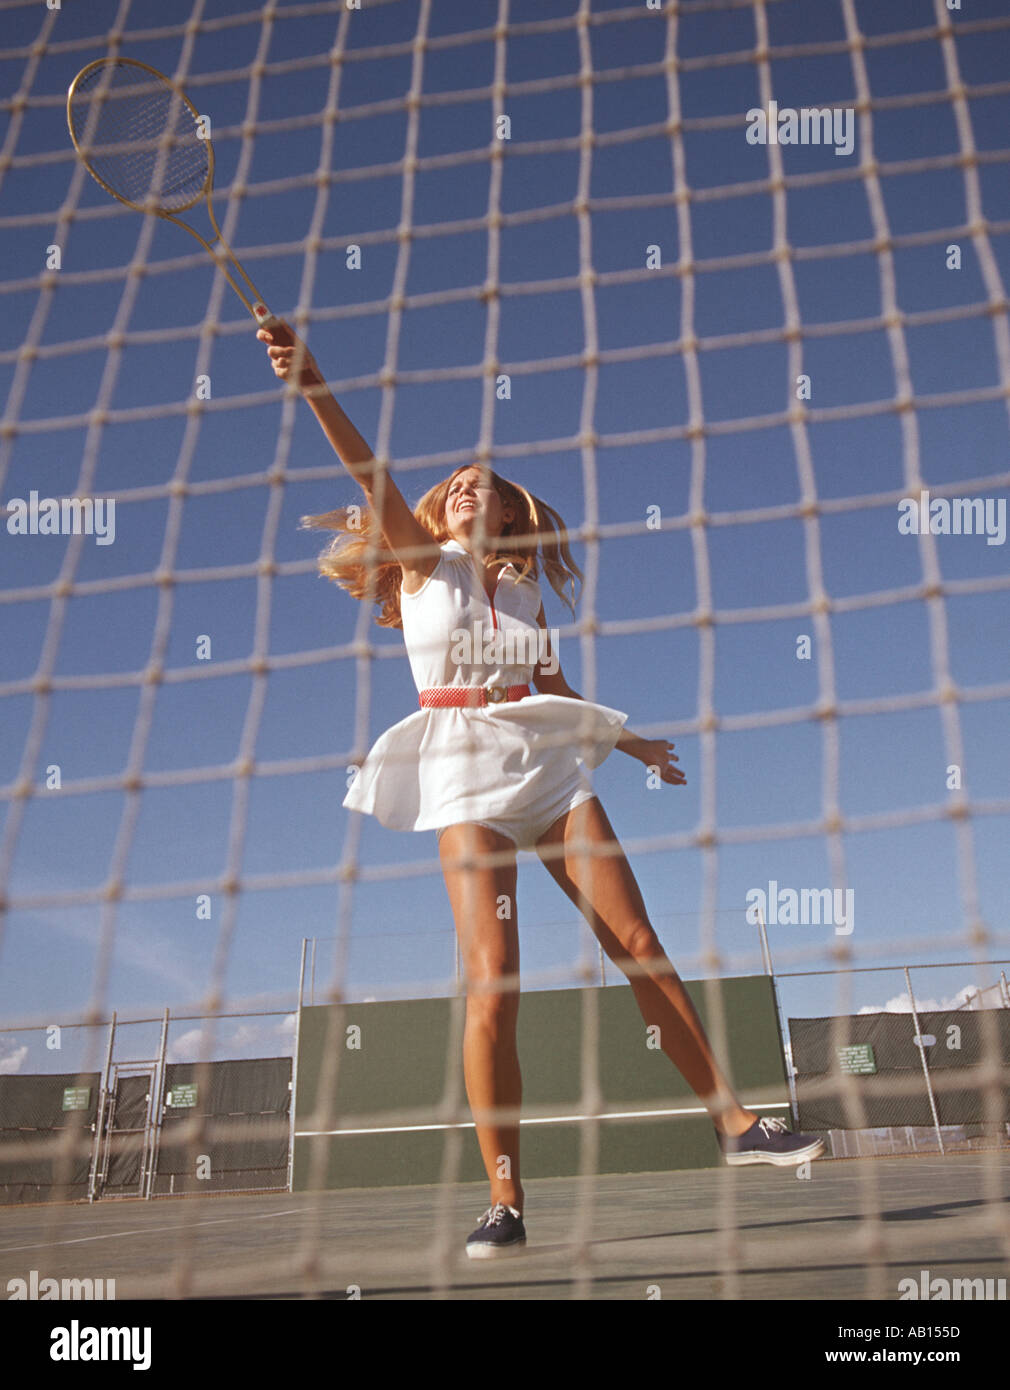 junge Frau Tennisspieler springt hoch um ein dienen zurückzukehren Stockfoto